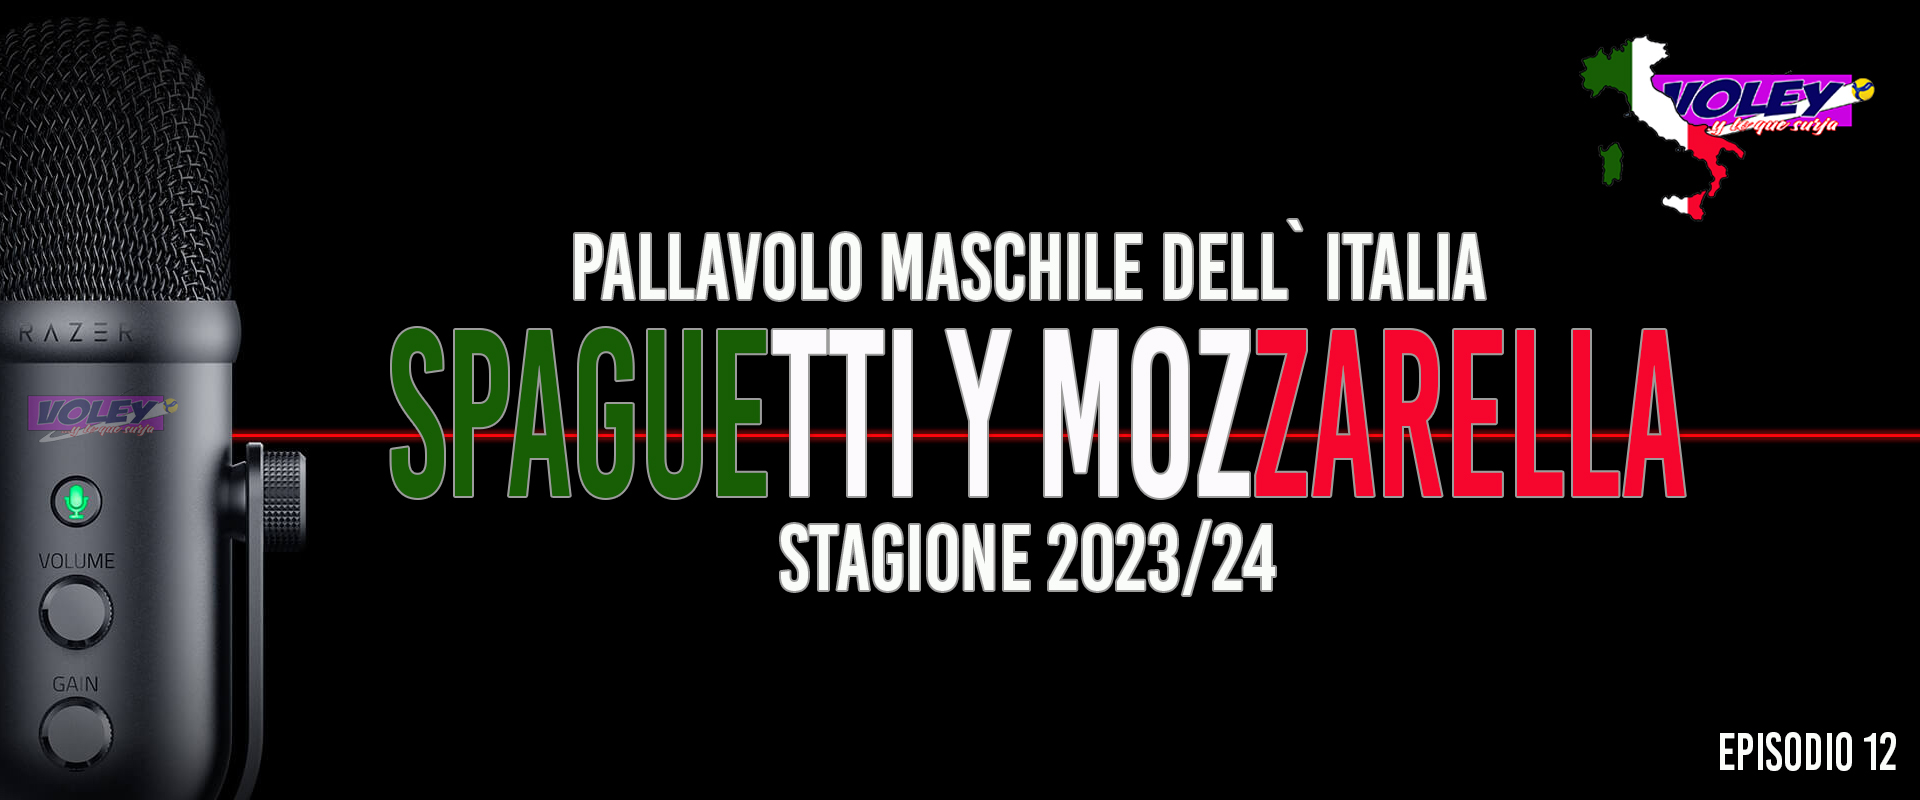 Quiero Spaguetti y Mozzarella. Episodio 12. Módena es una caja de bombas